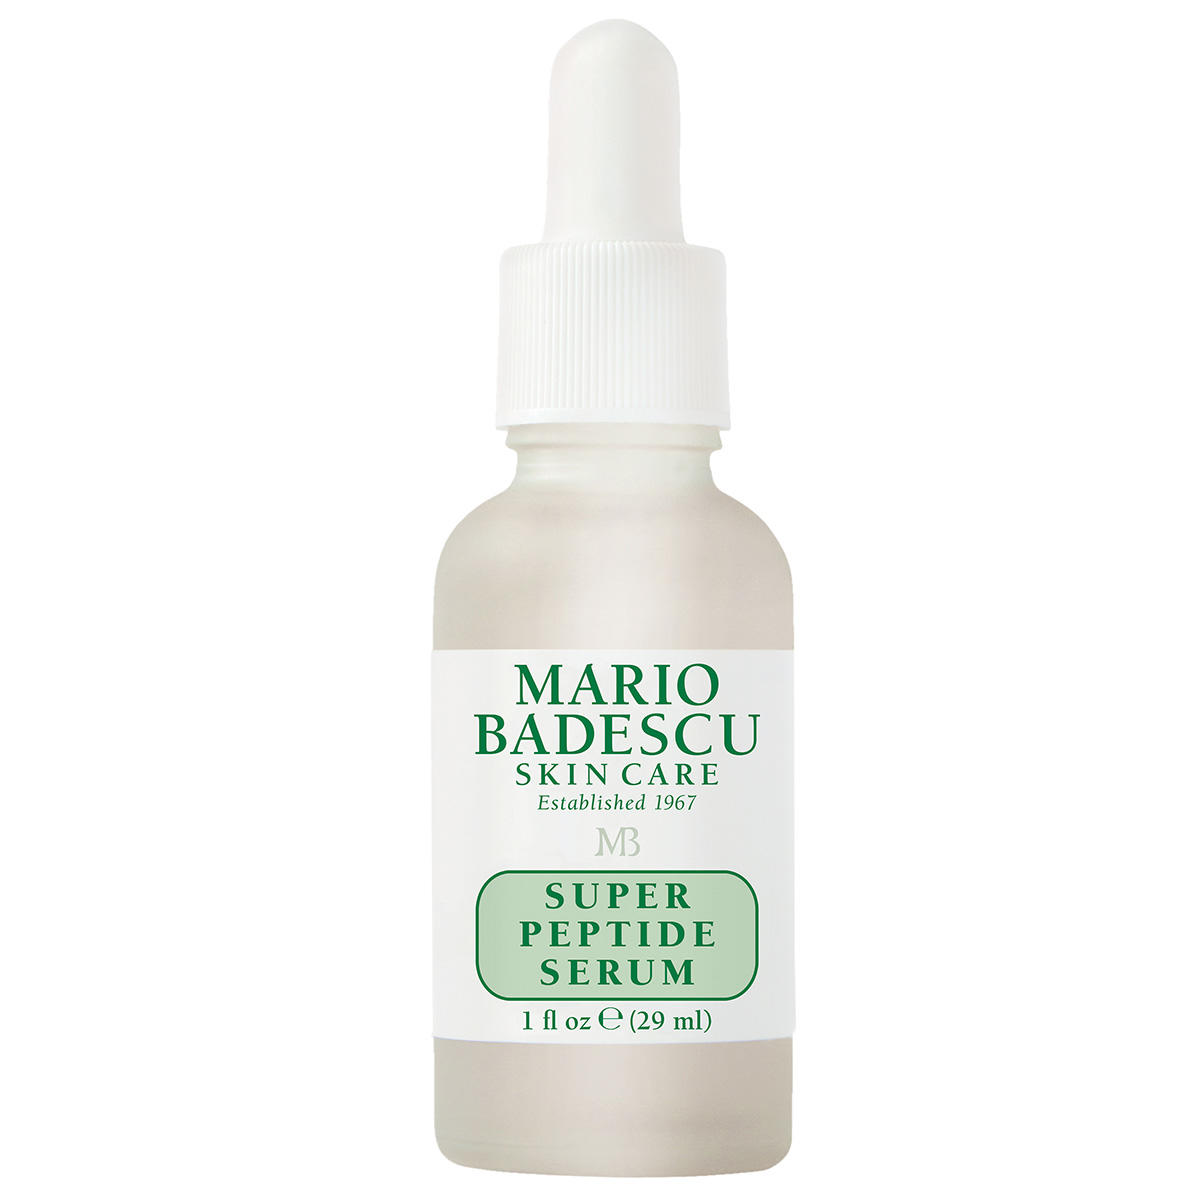 MARIO BADESCU Super Peptide Serum 29 ml - 1